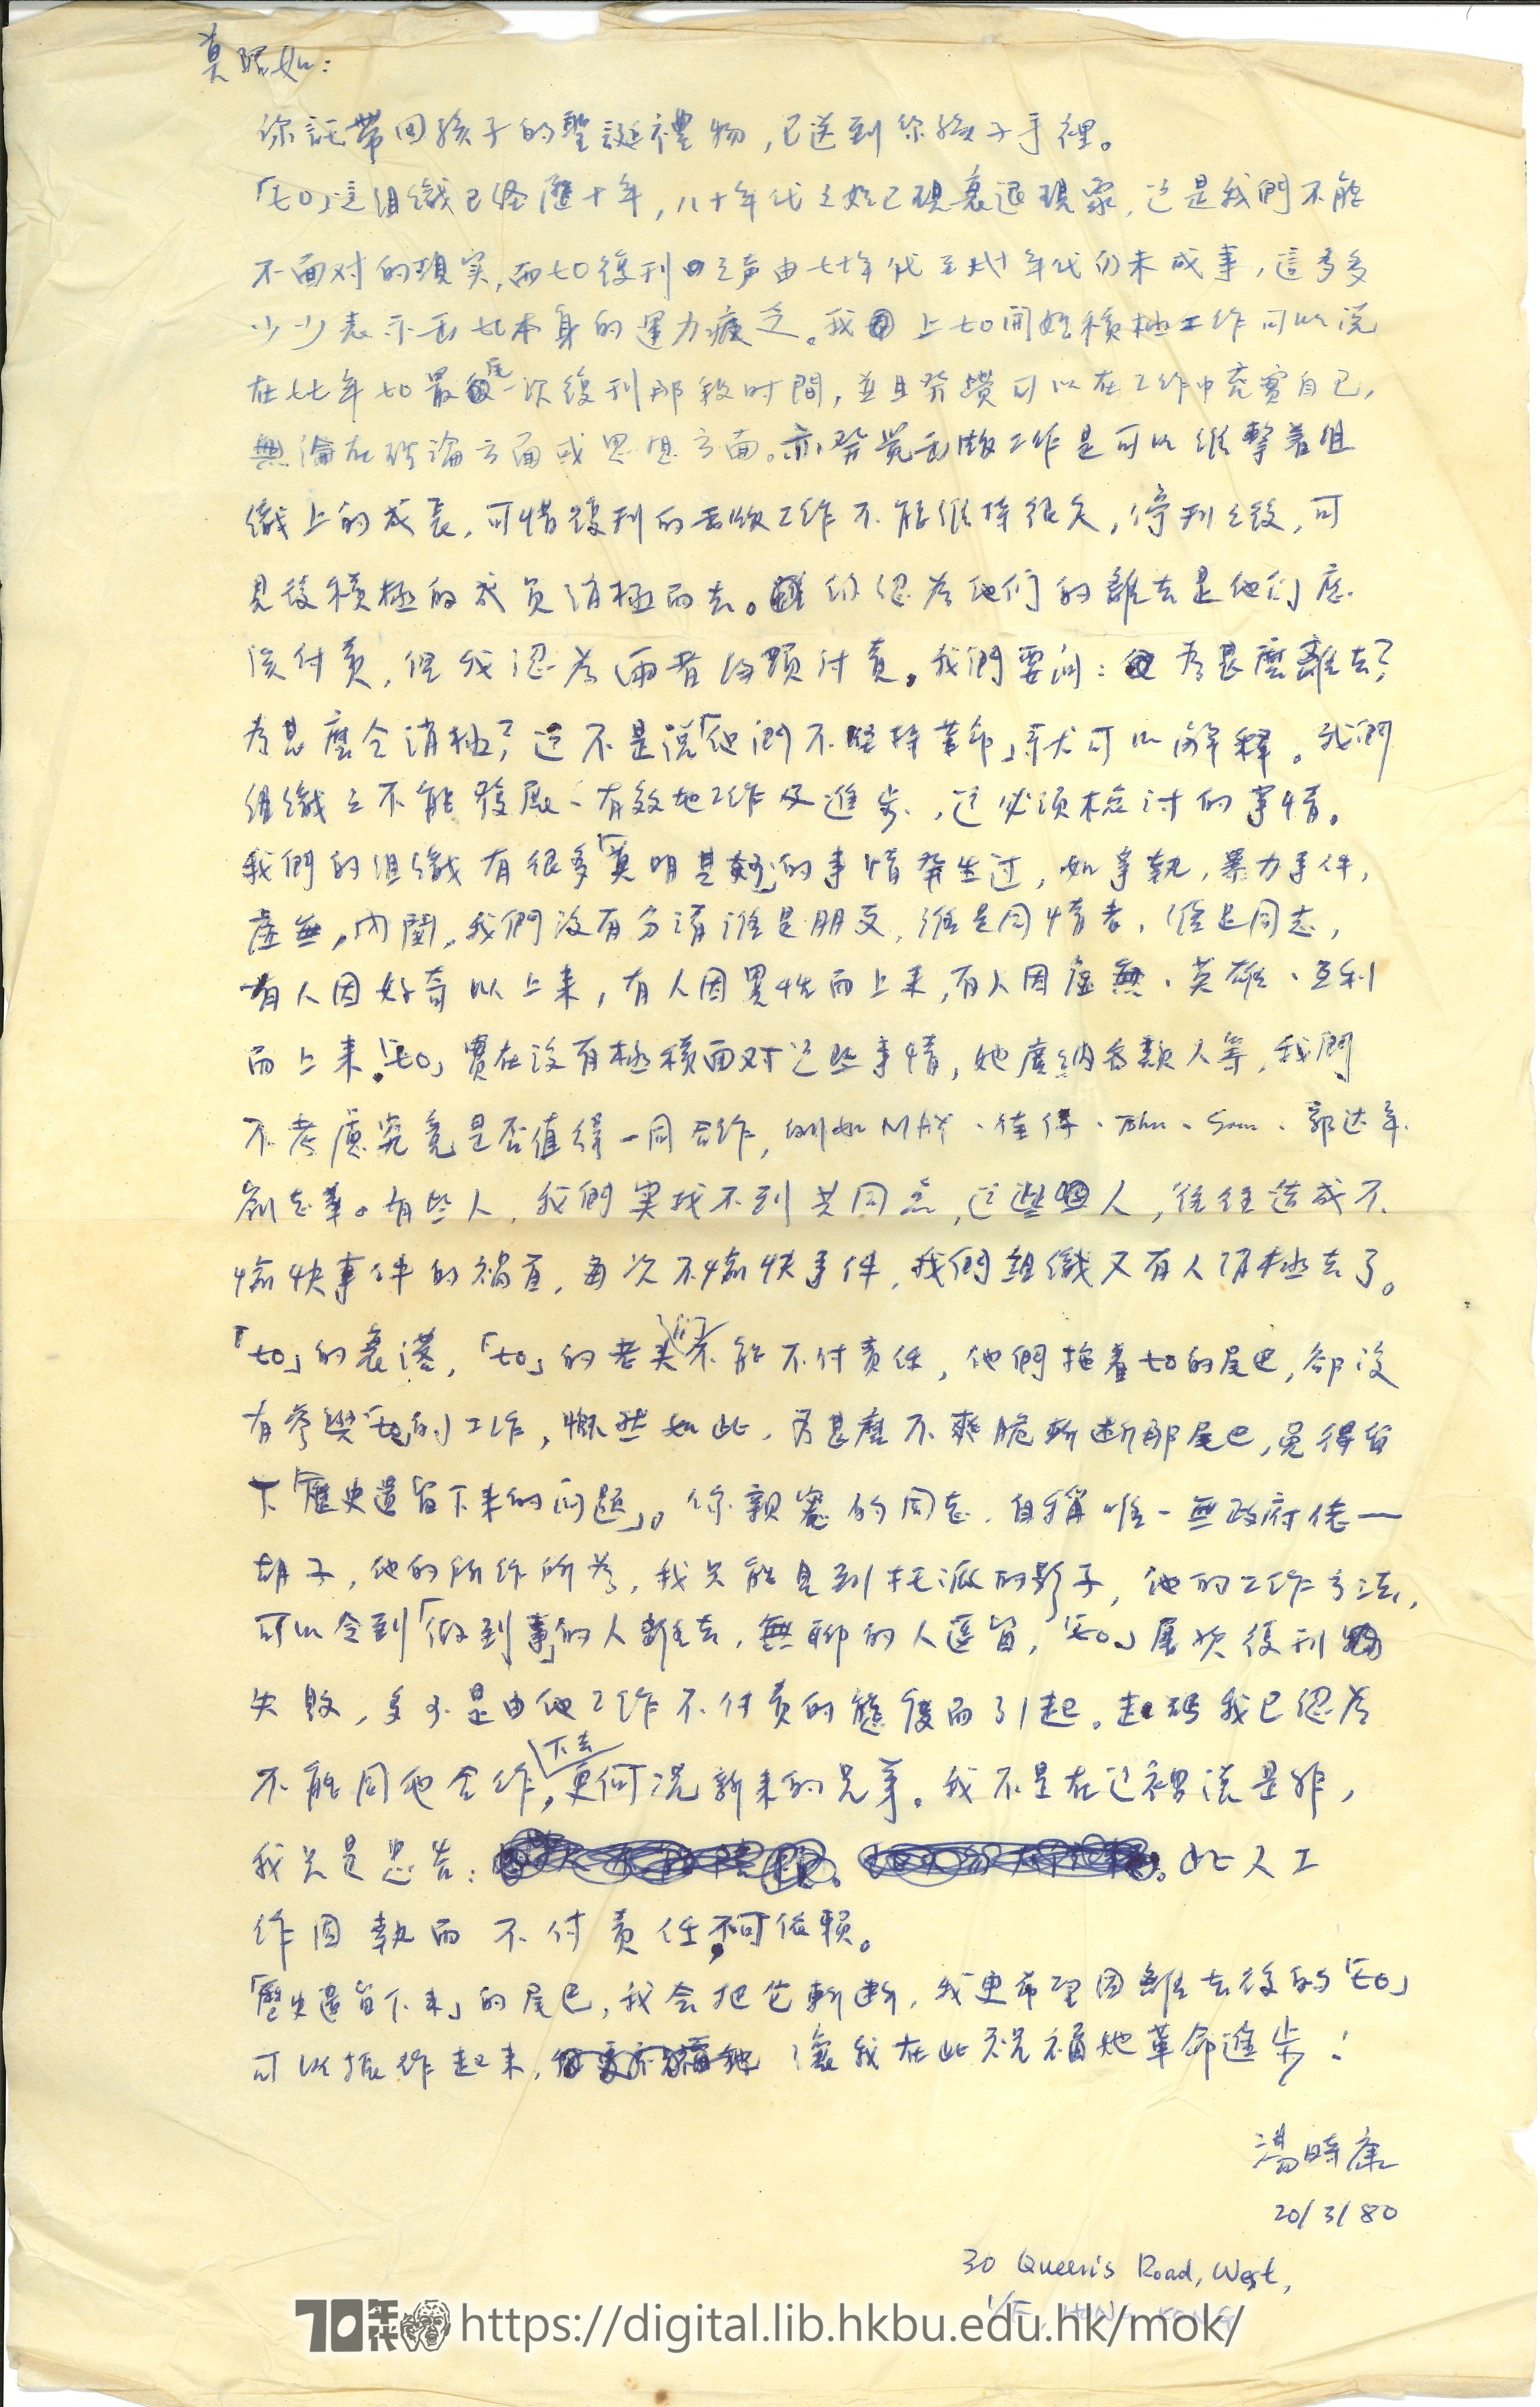   Letter from Tong Shi-hong to Mok Chiu Yu 湯時康 